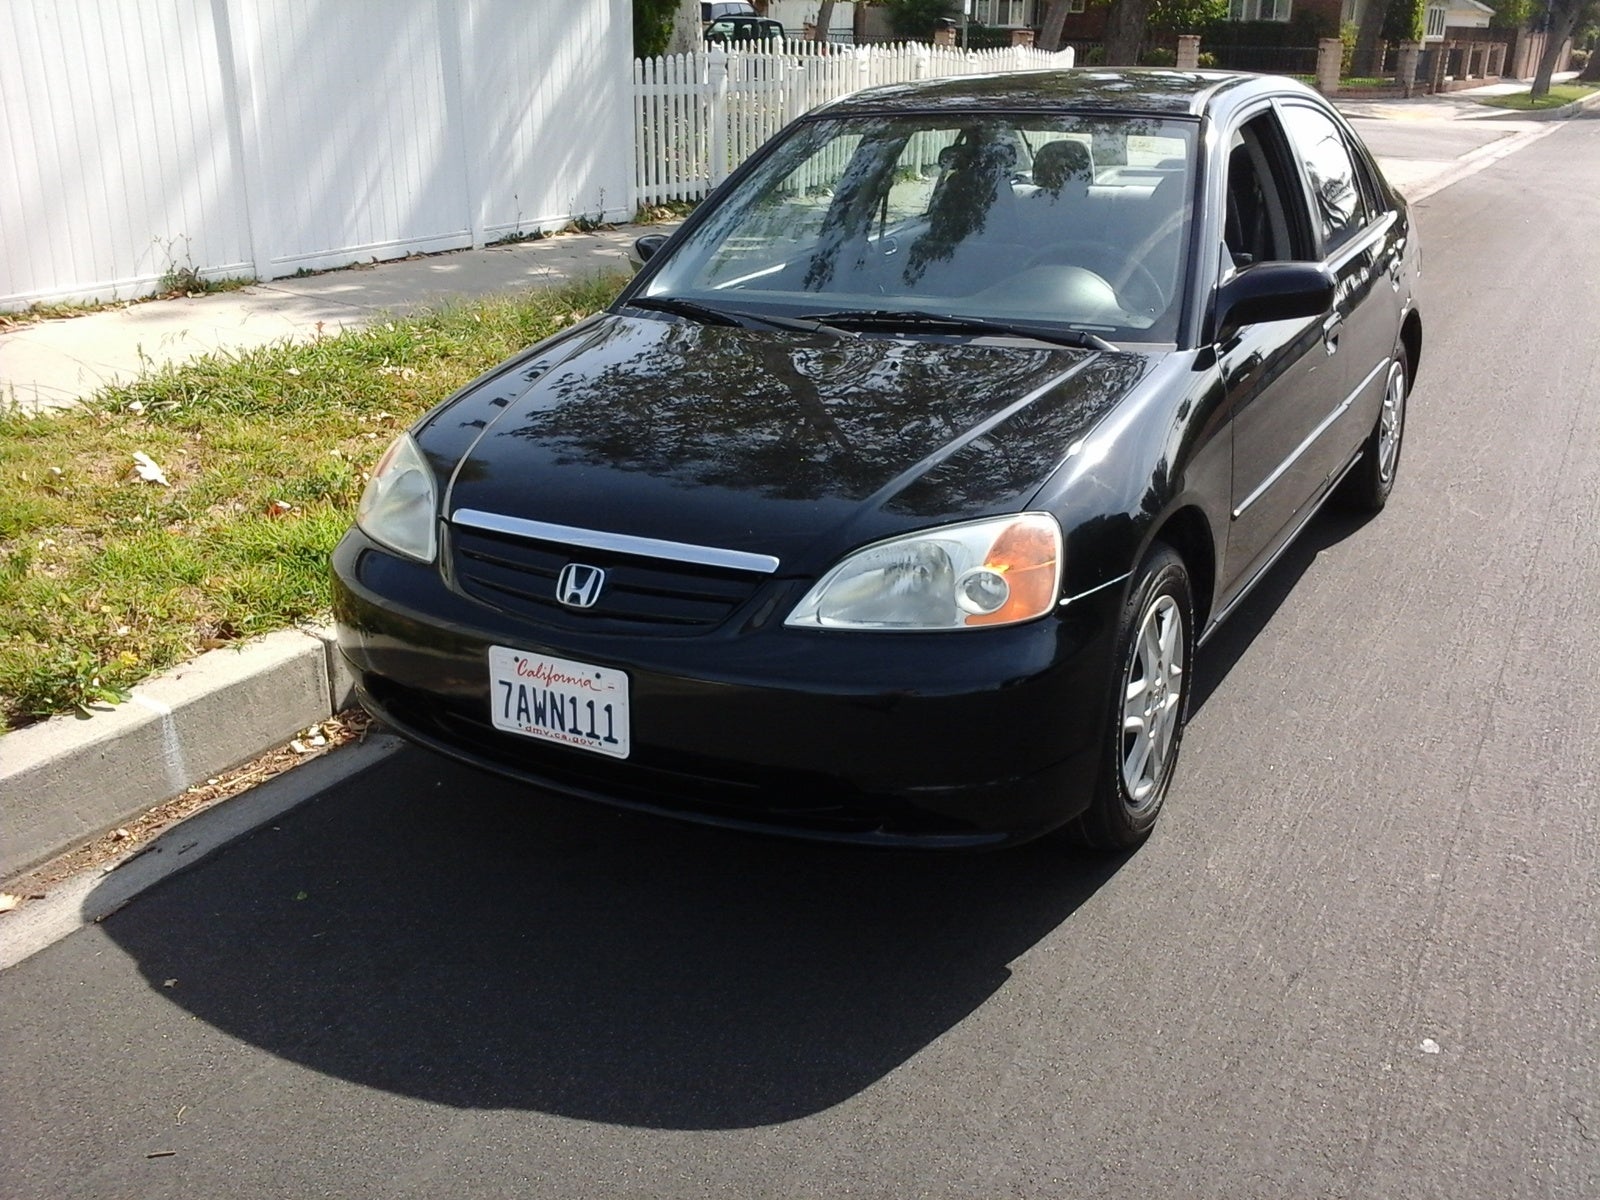 Honda civic 2003. Honda Civic LX 2003. Honda Civic 7 2003. Honda Цивик 2003.